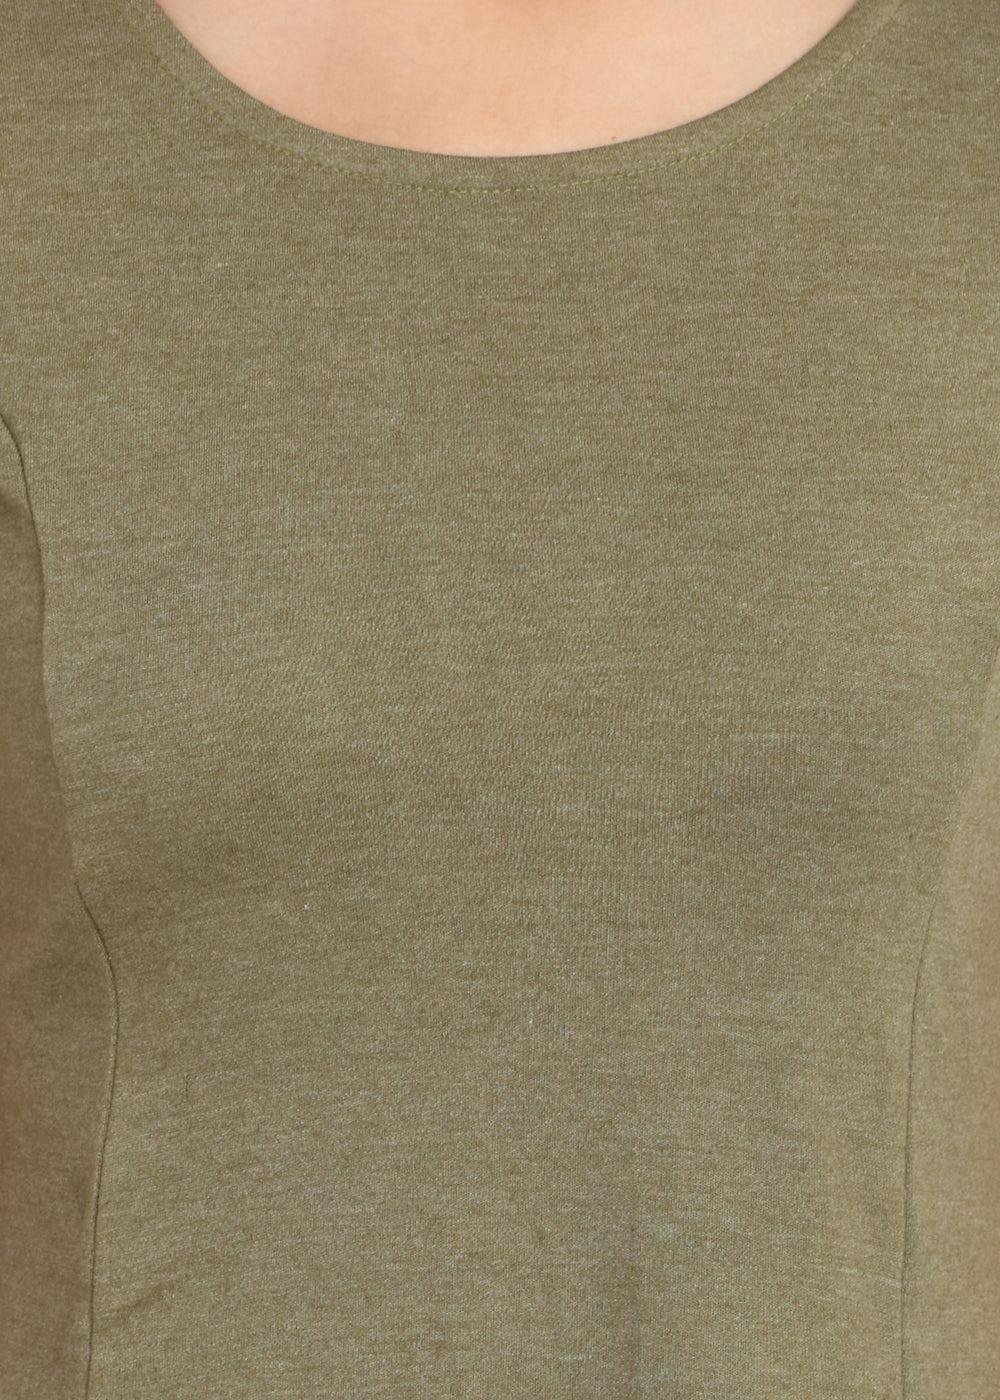 Melange Olive Short Knit Dress - GENZEE